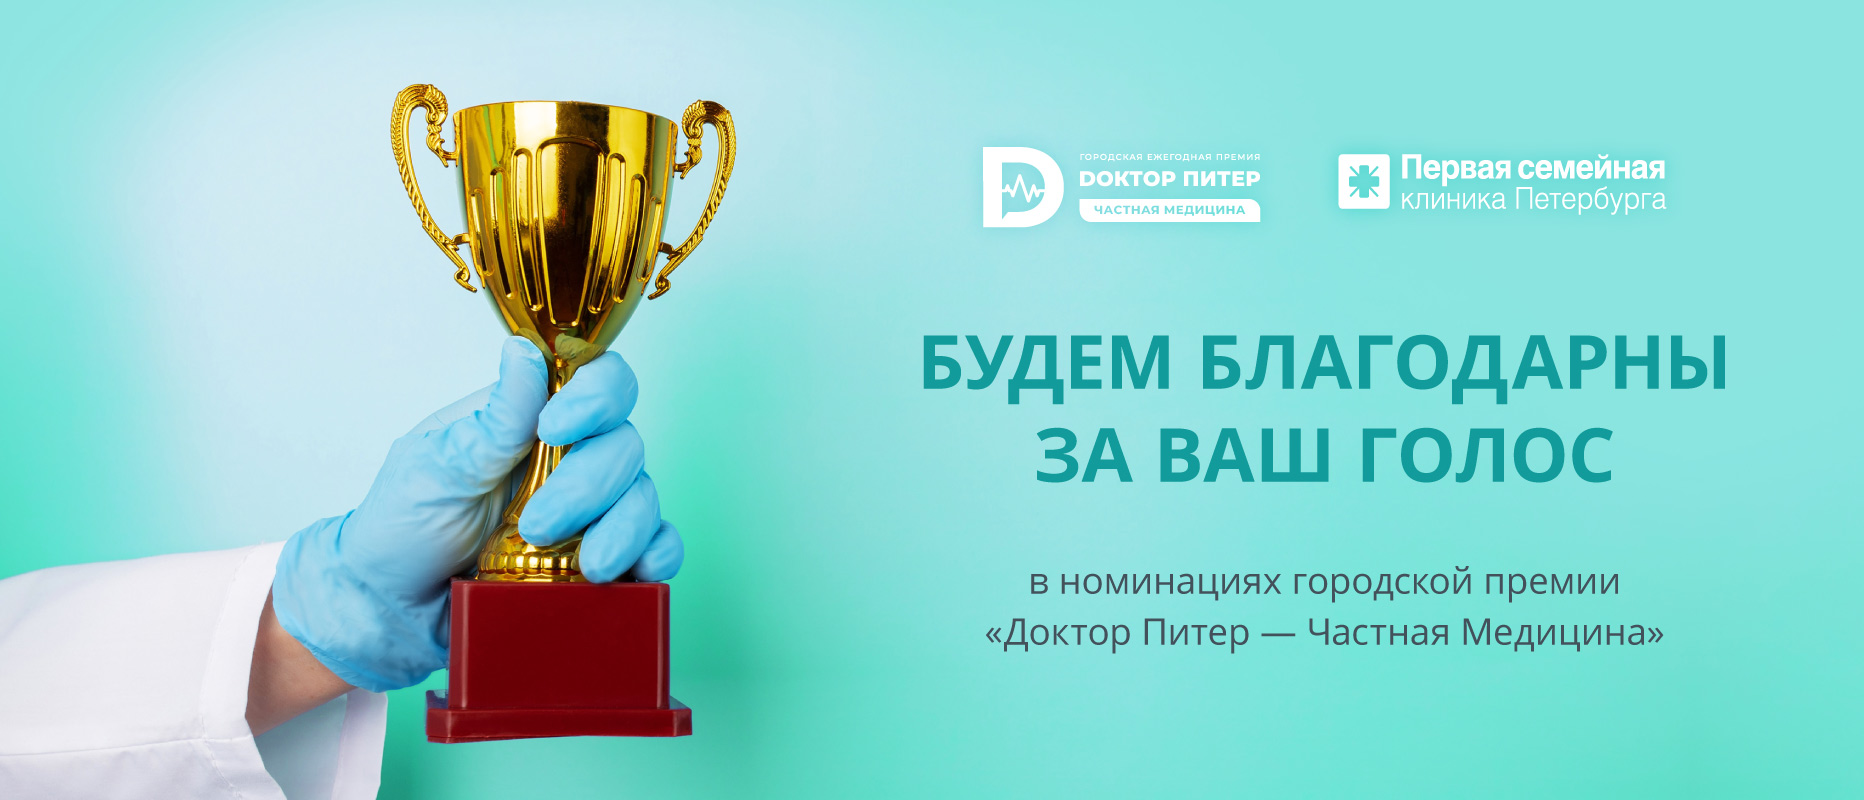 Медицинский холдинг «Первая семейная клиника Петербурга» принимает участие в городской премии «Доктор Питер – частная медицина»